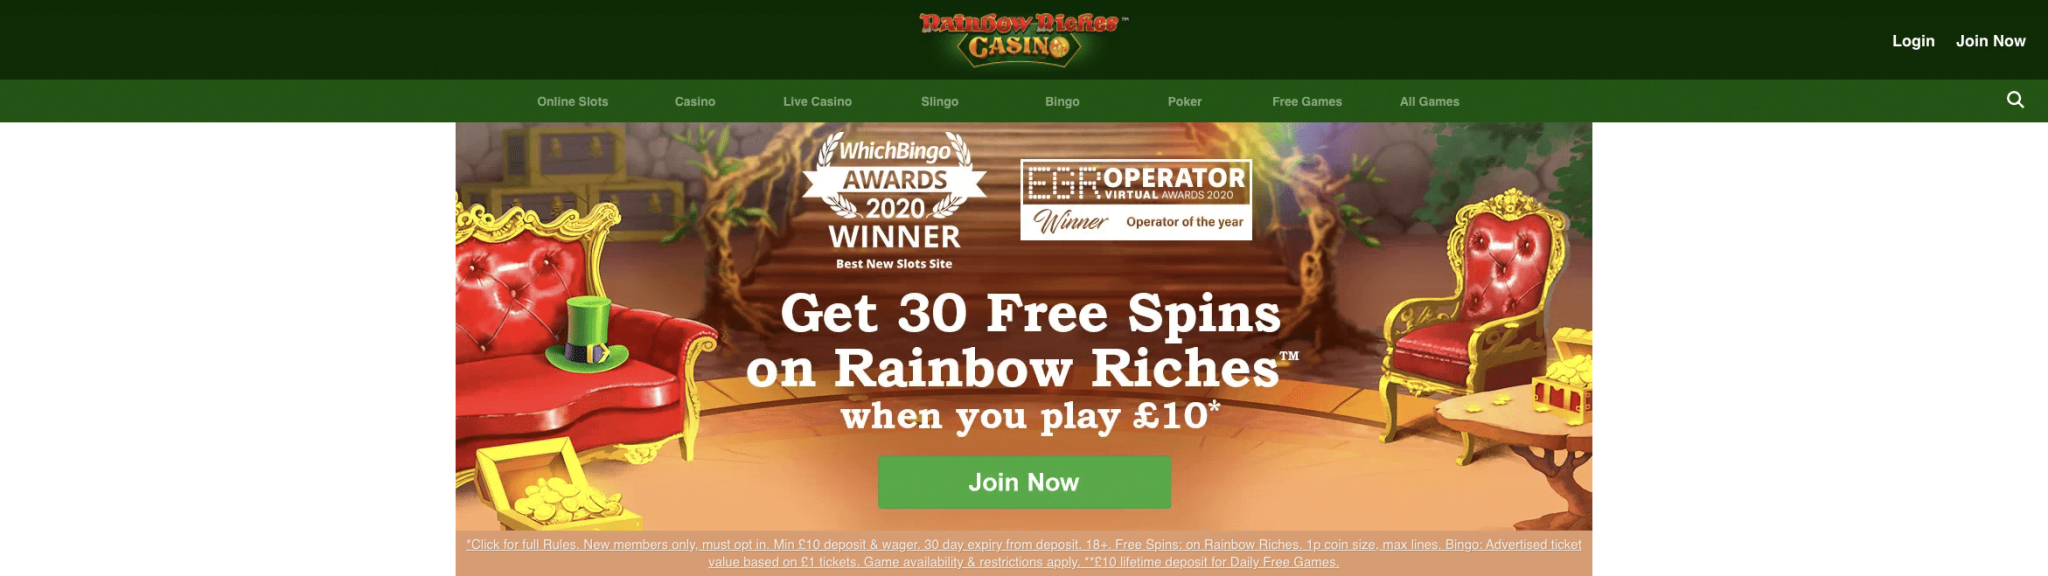 rainbow riches deposit bonus